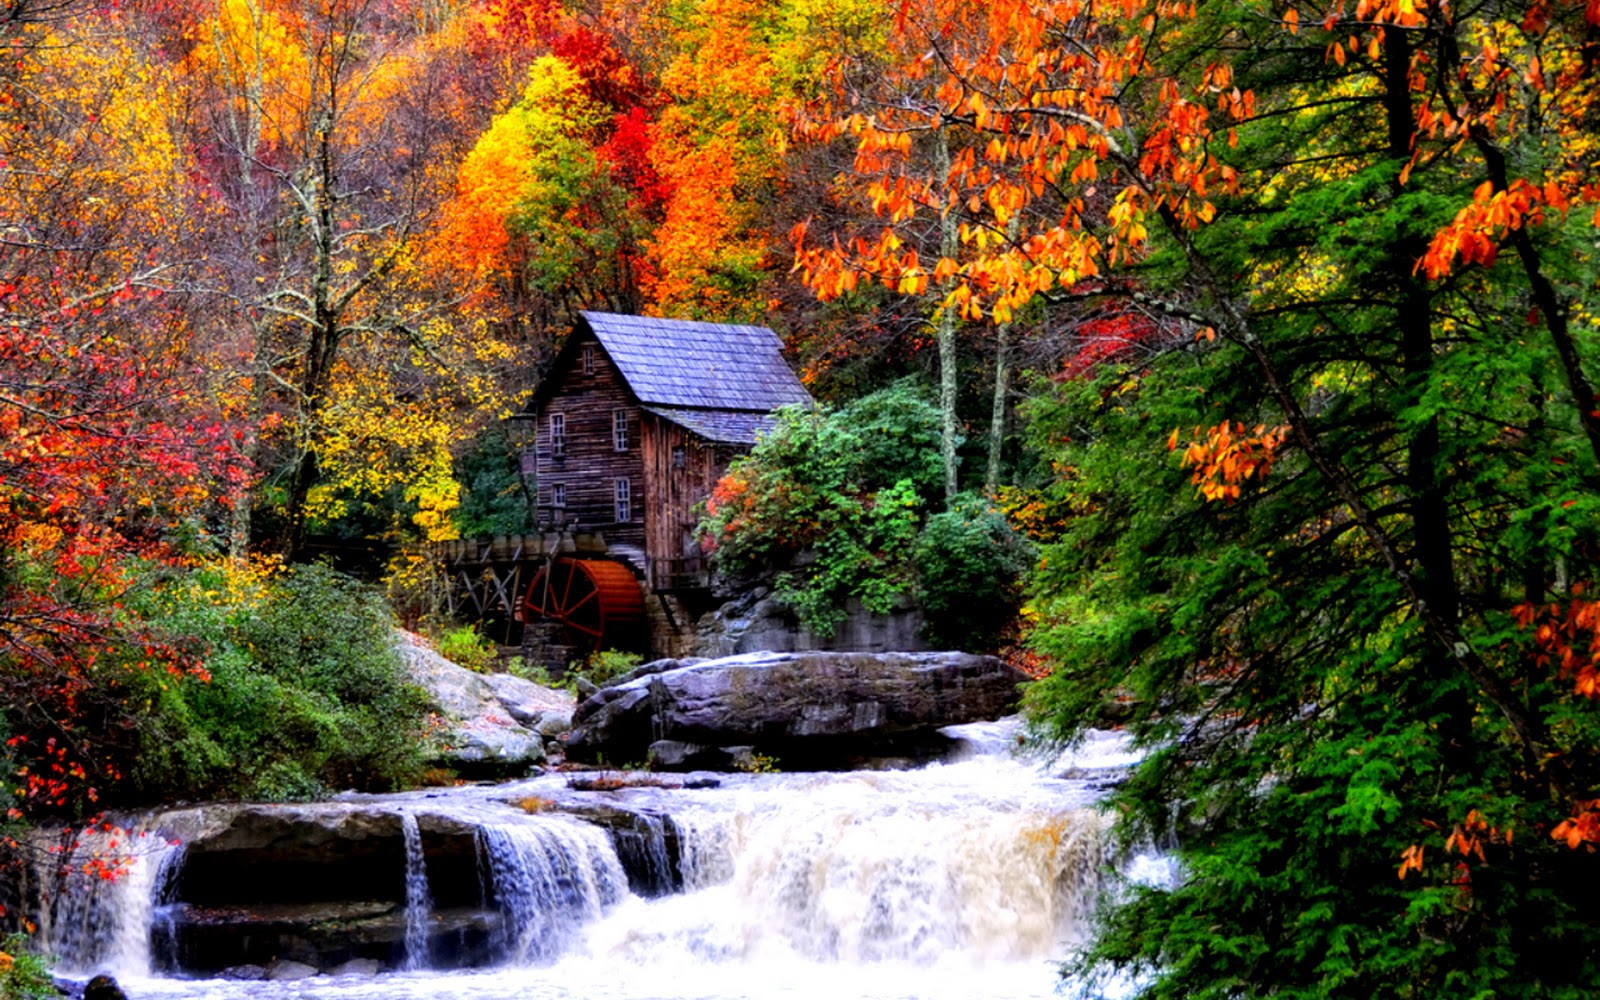 Autumn Waterfalls Hd Desktop Wallpaper